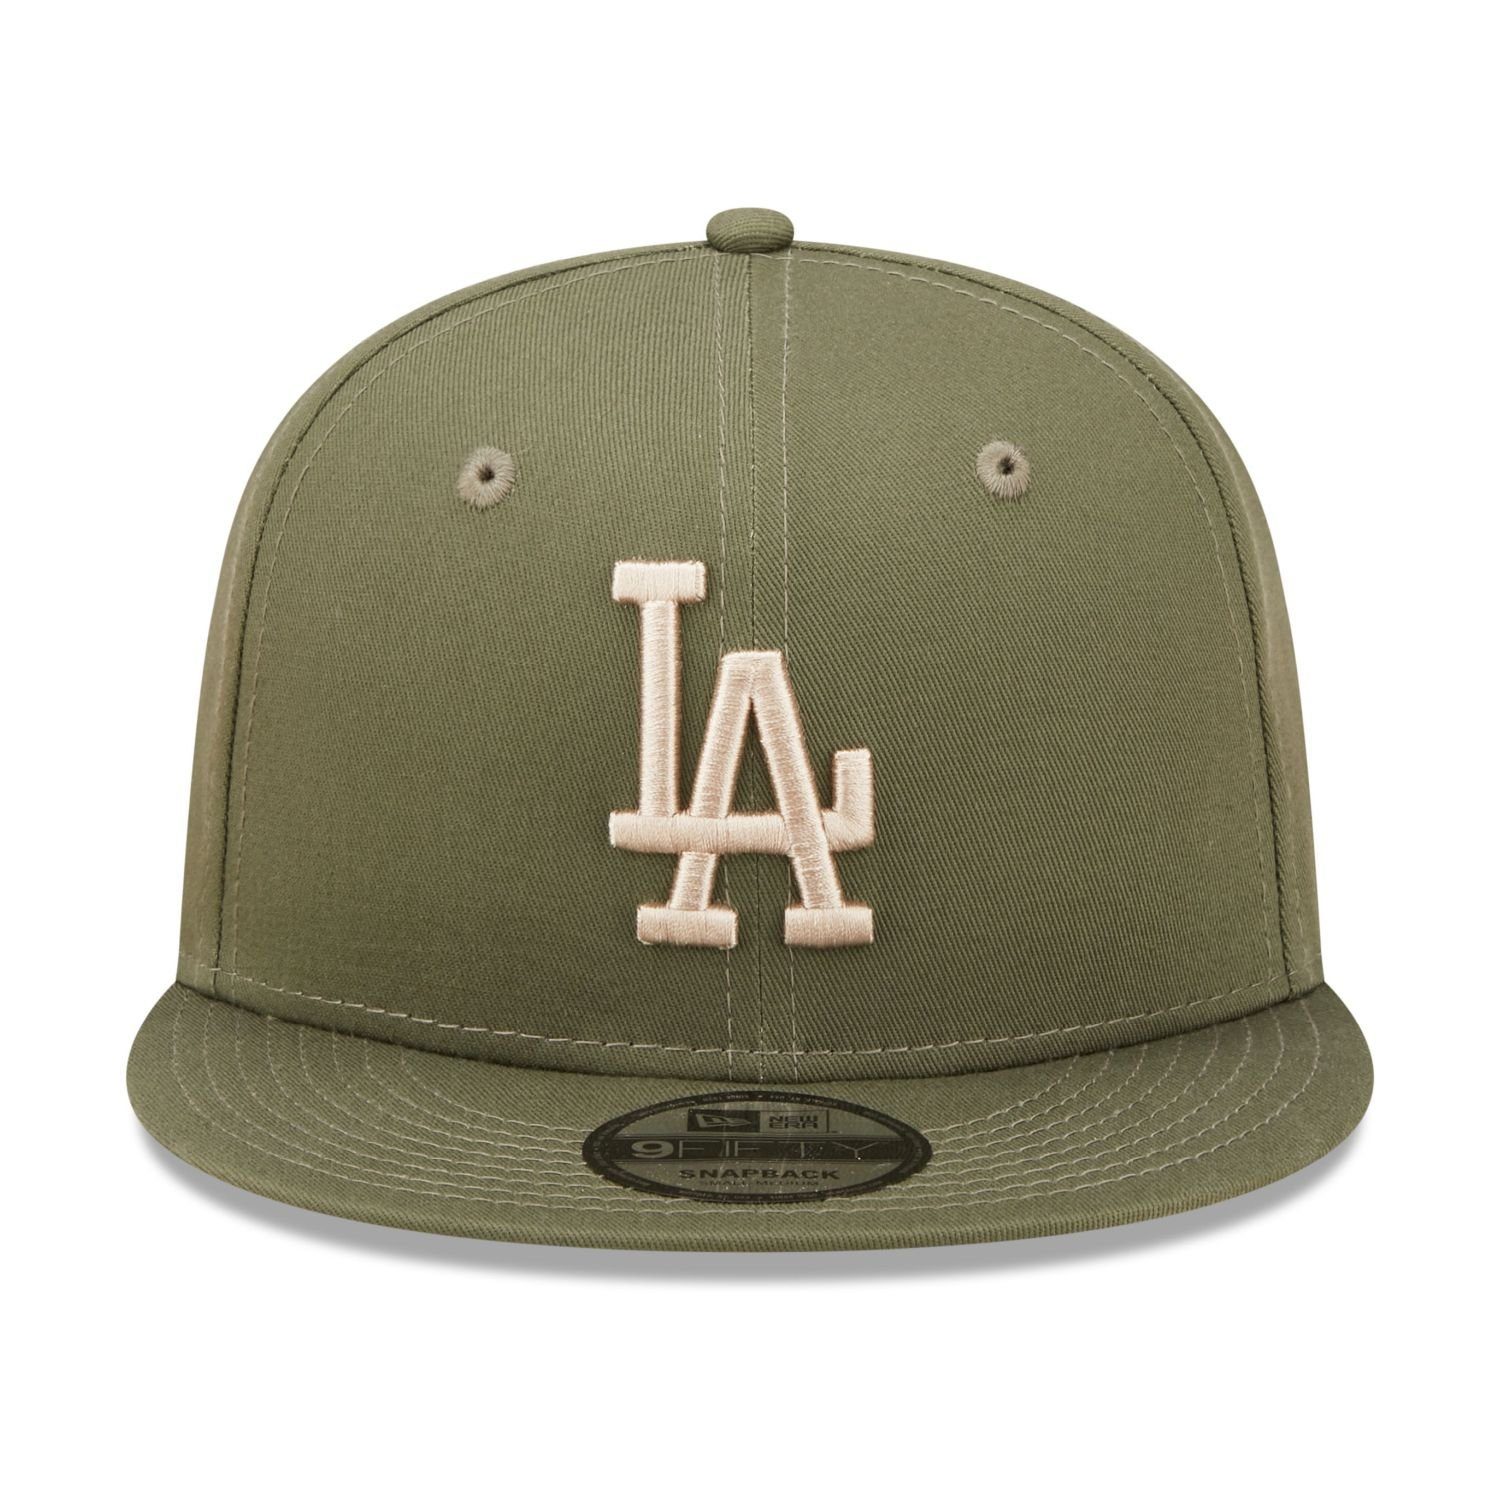 Cap New Dodgers 9Fifty Era Angeles Los Snapback